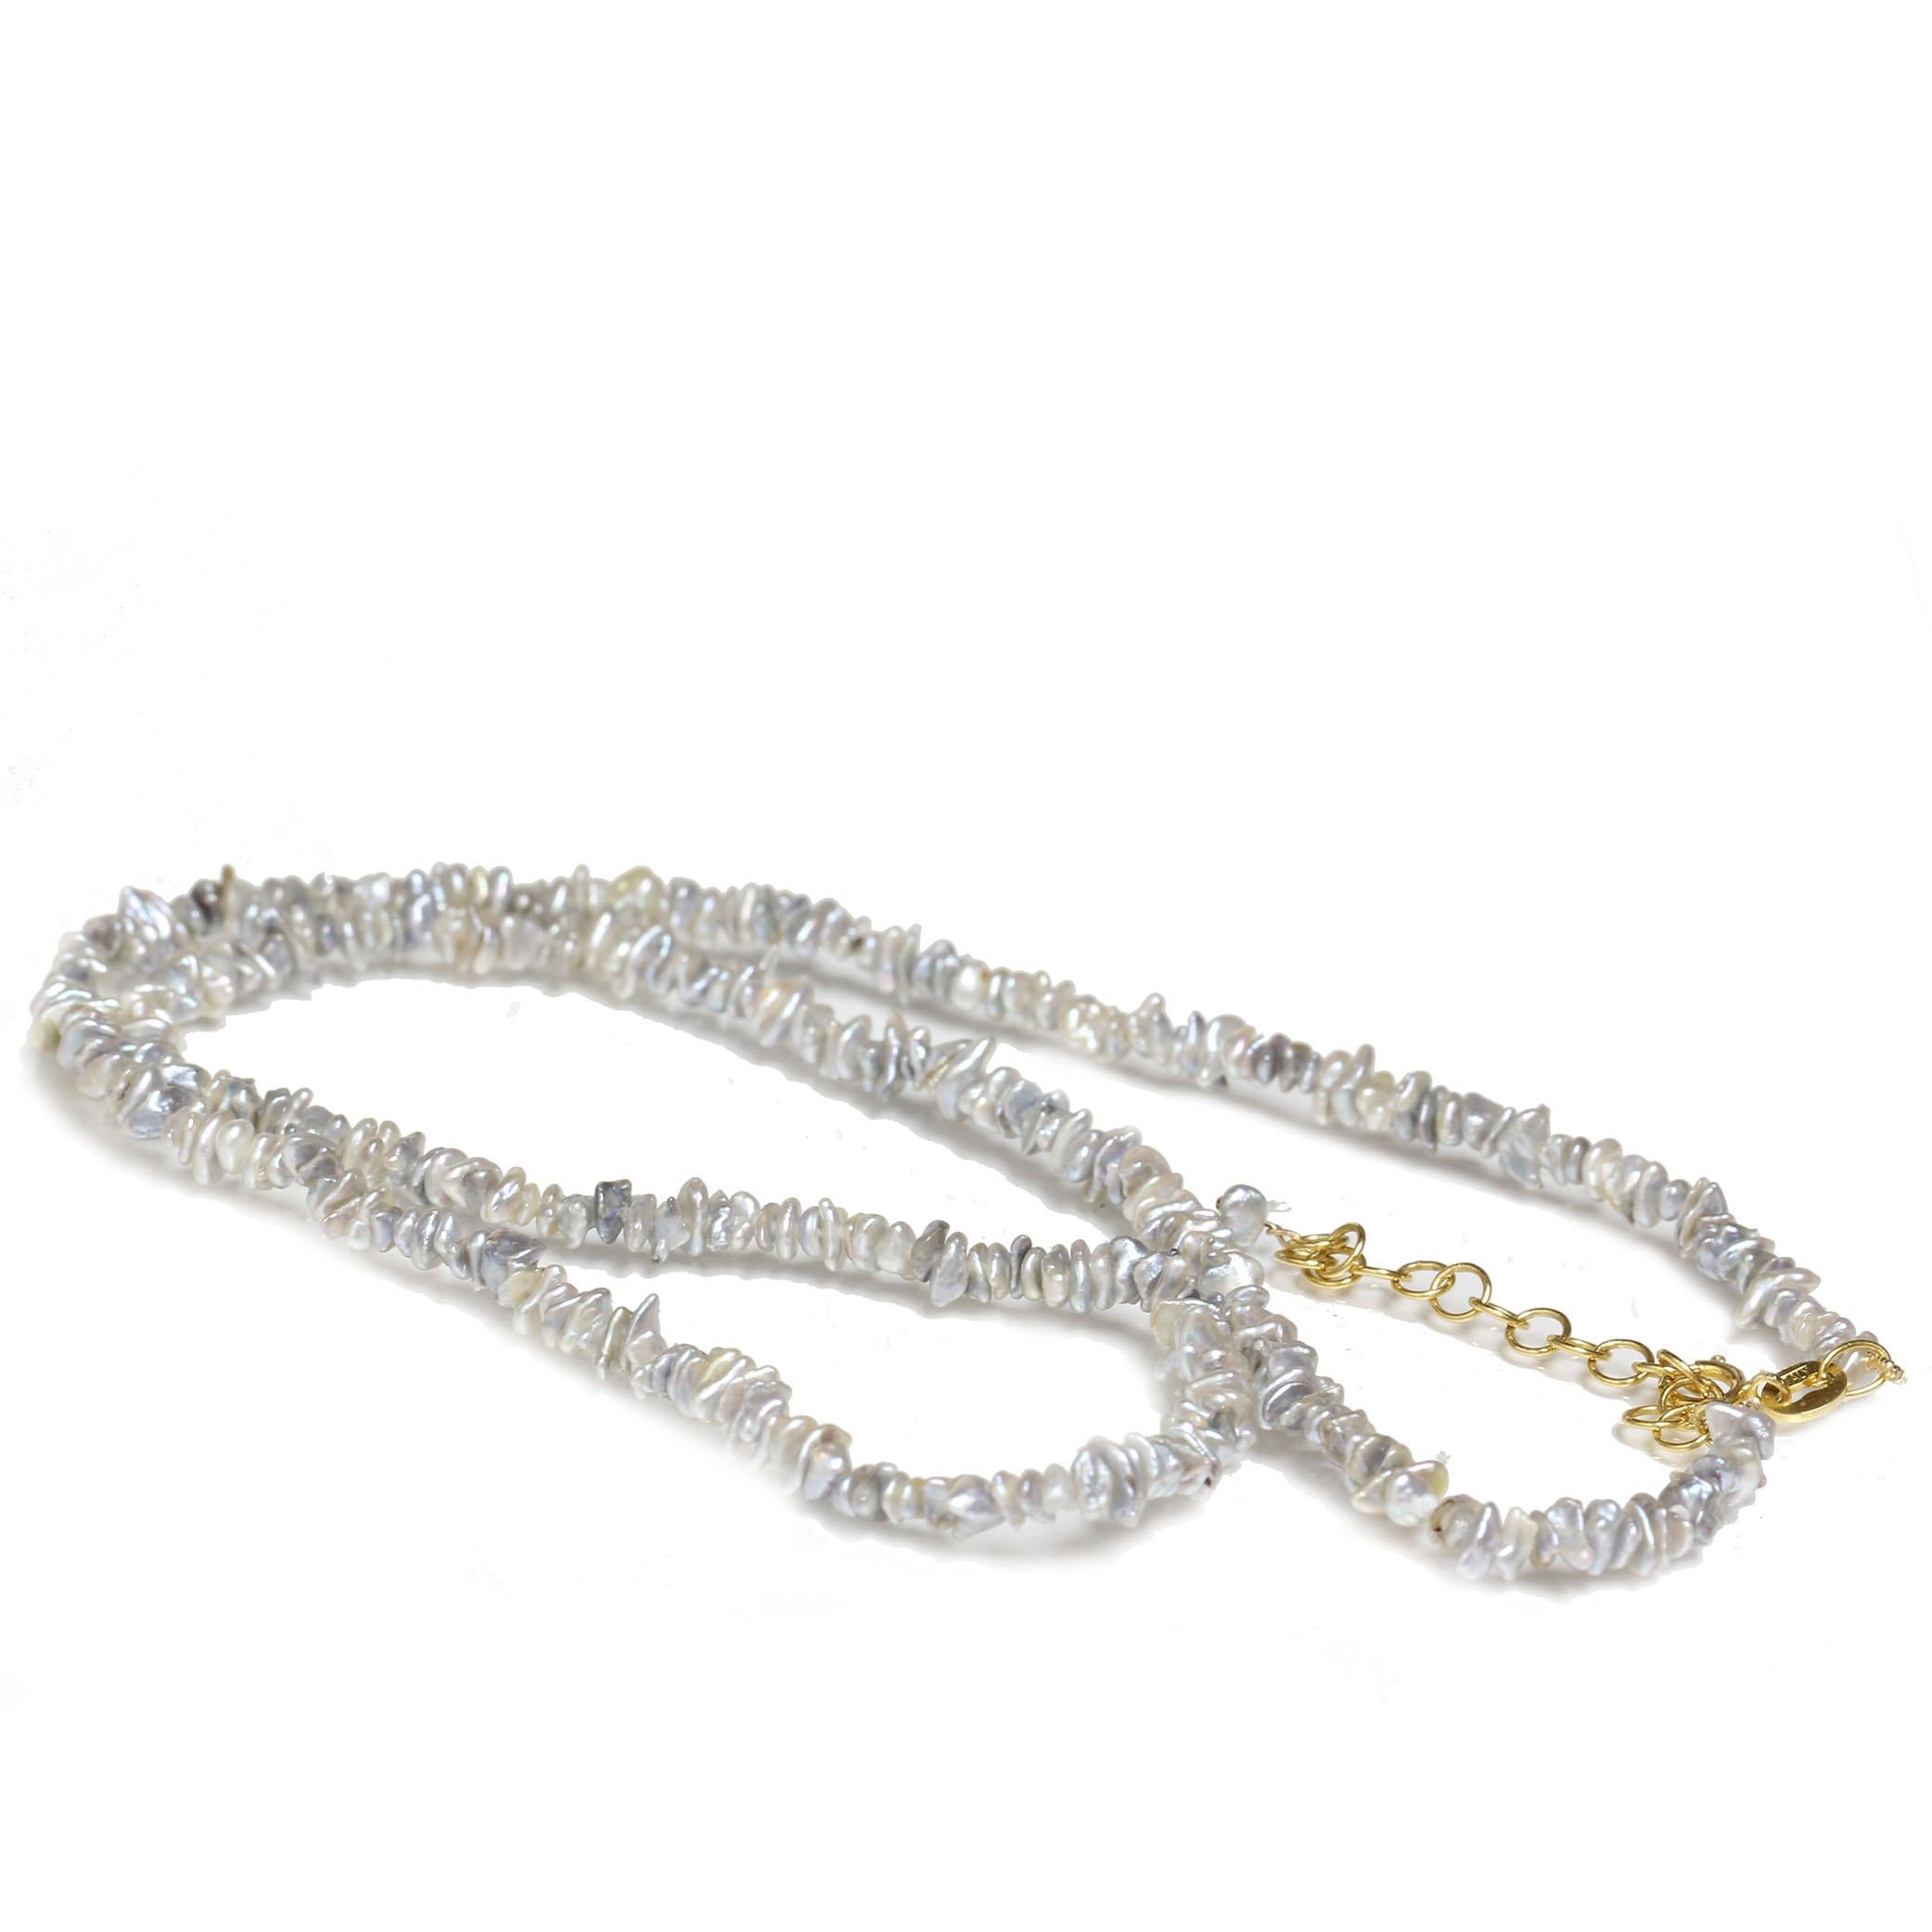 Perles Akoya keshi d'eau salée à plusieurs rangs avec une perle de mer du sud à l'extrémité. Ce collier est composé de 30 rangs de minuscules perles keshi, il est tellement unique avec des perles d'Akoya de 1,6 à 2,0 mm sur plusieurs rangs et une